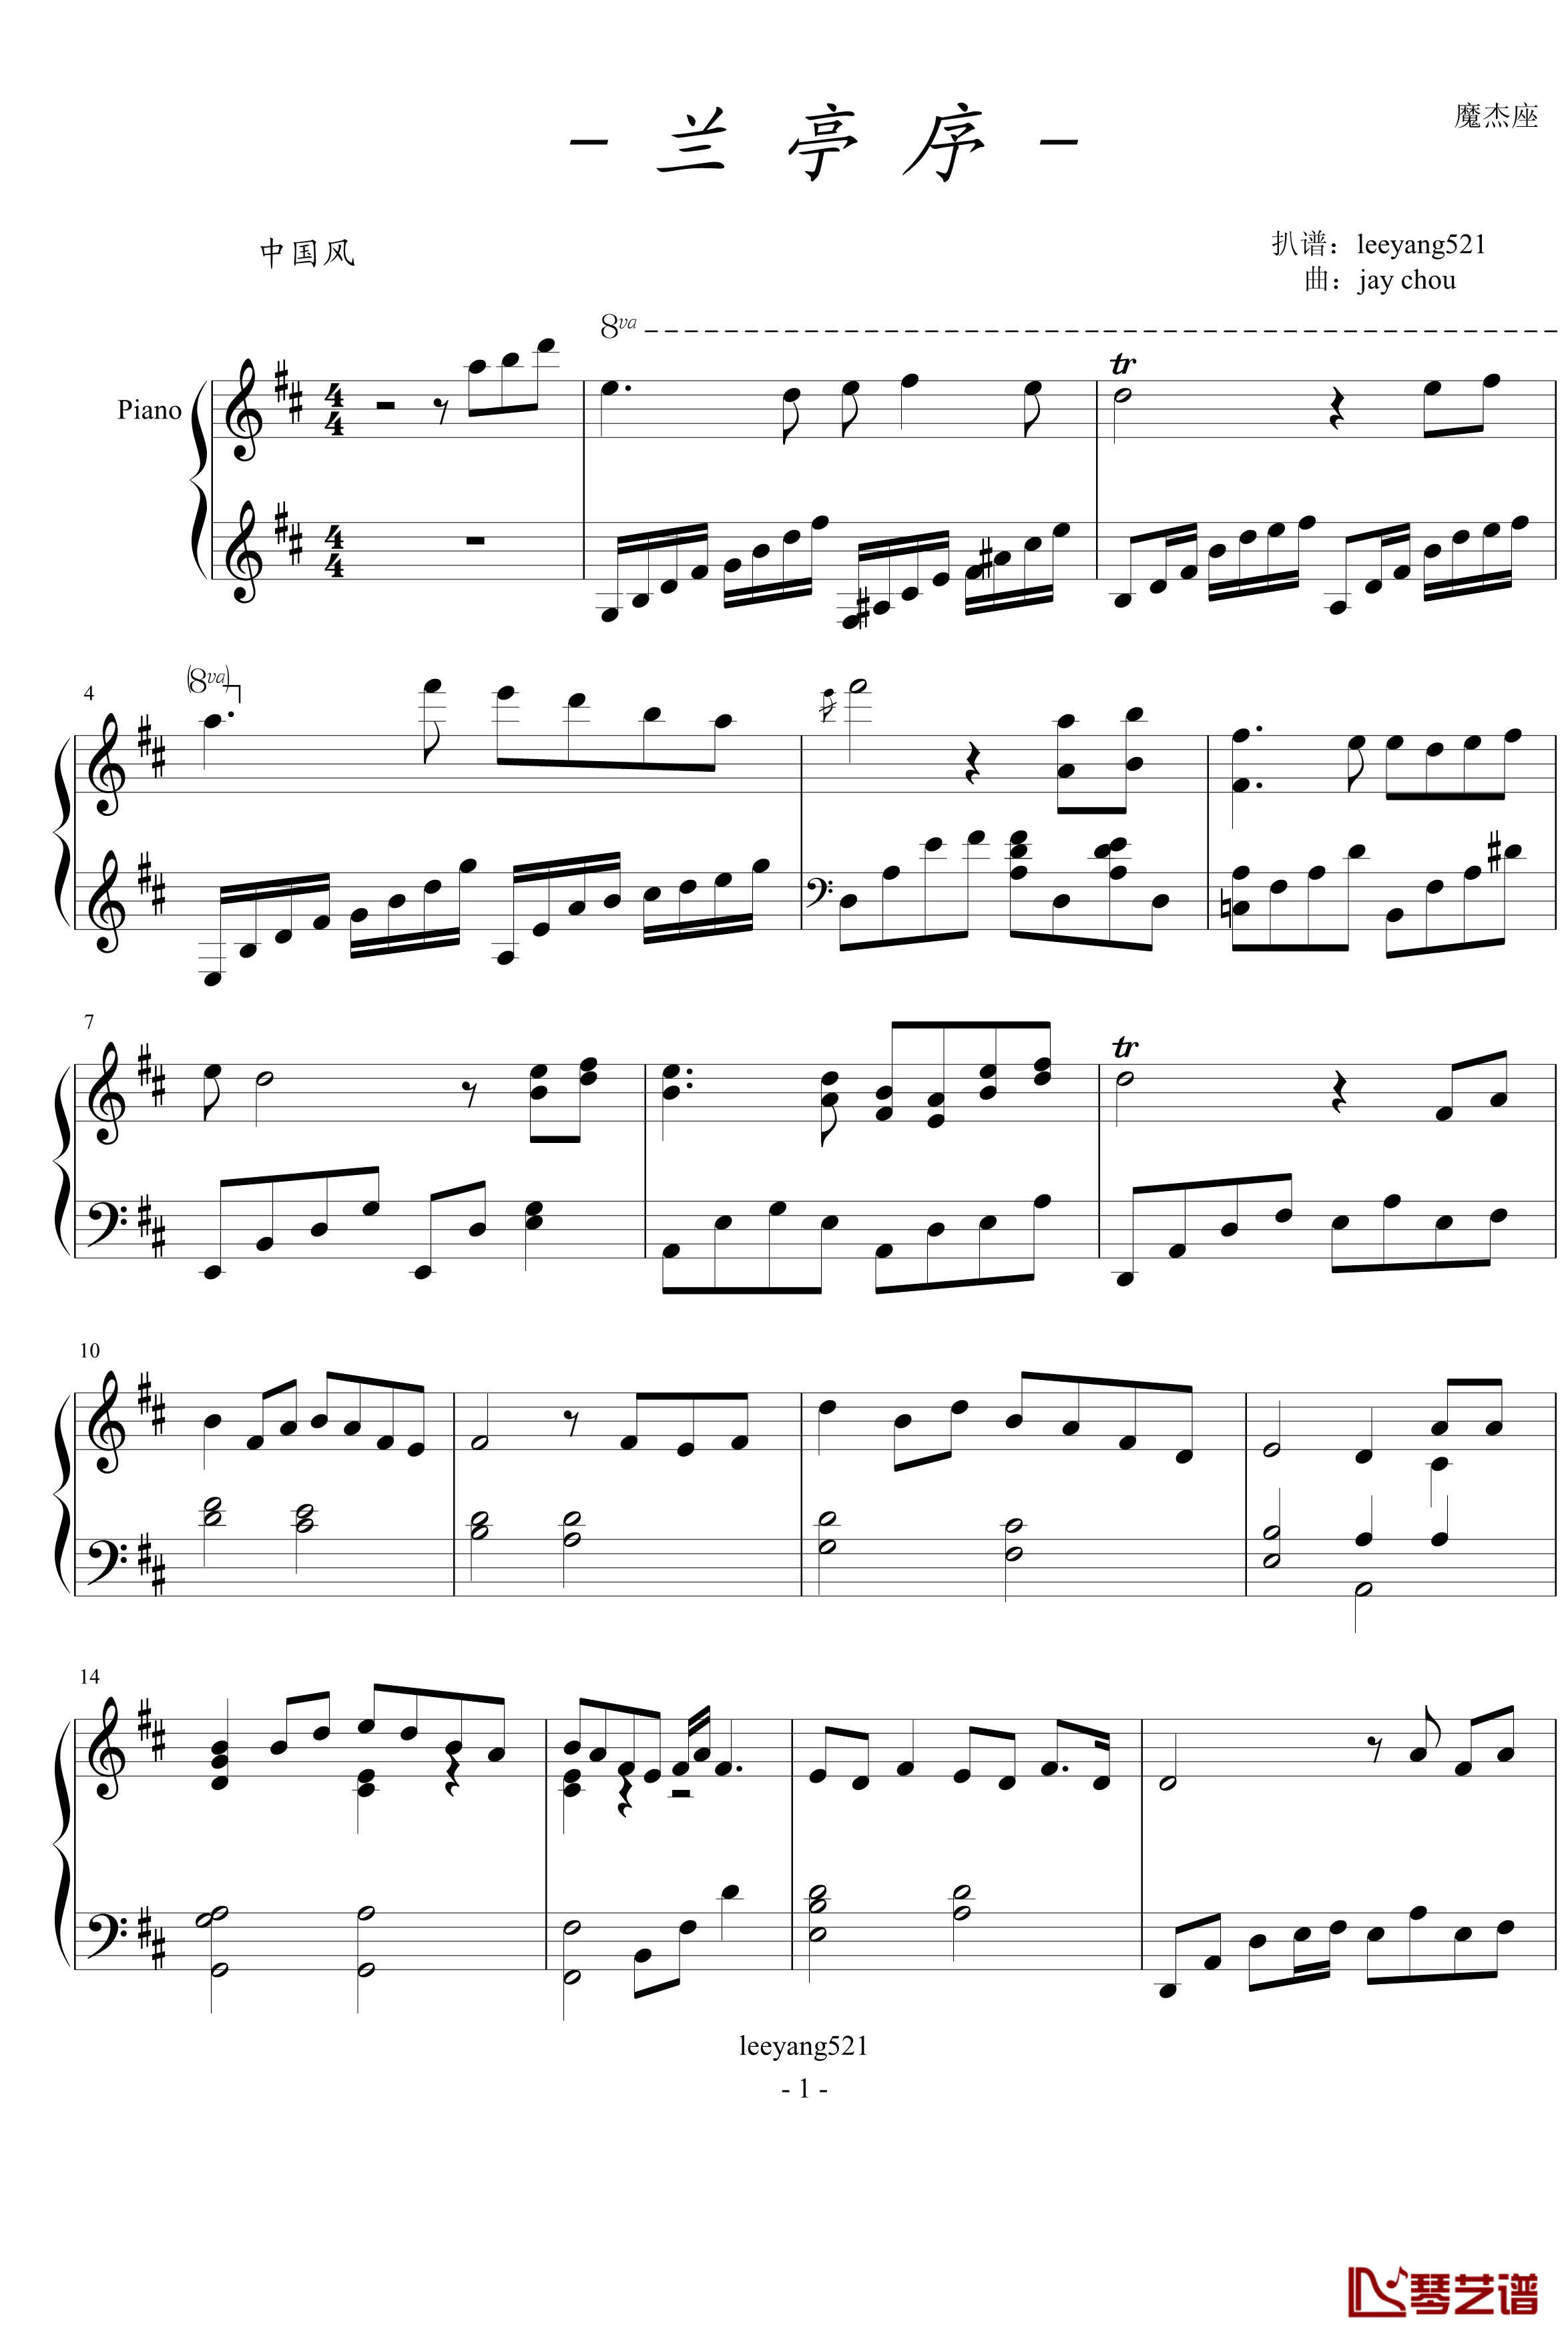 兰亭序钢琴谱-leeyang521版-周杰伦1